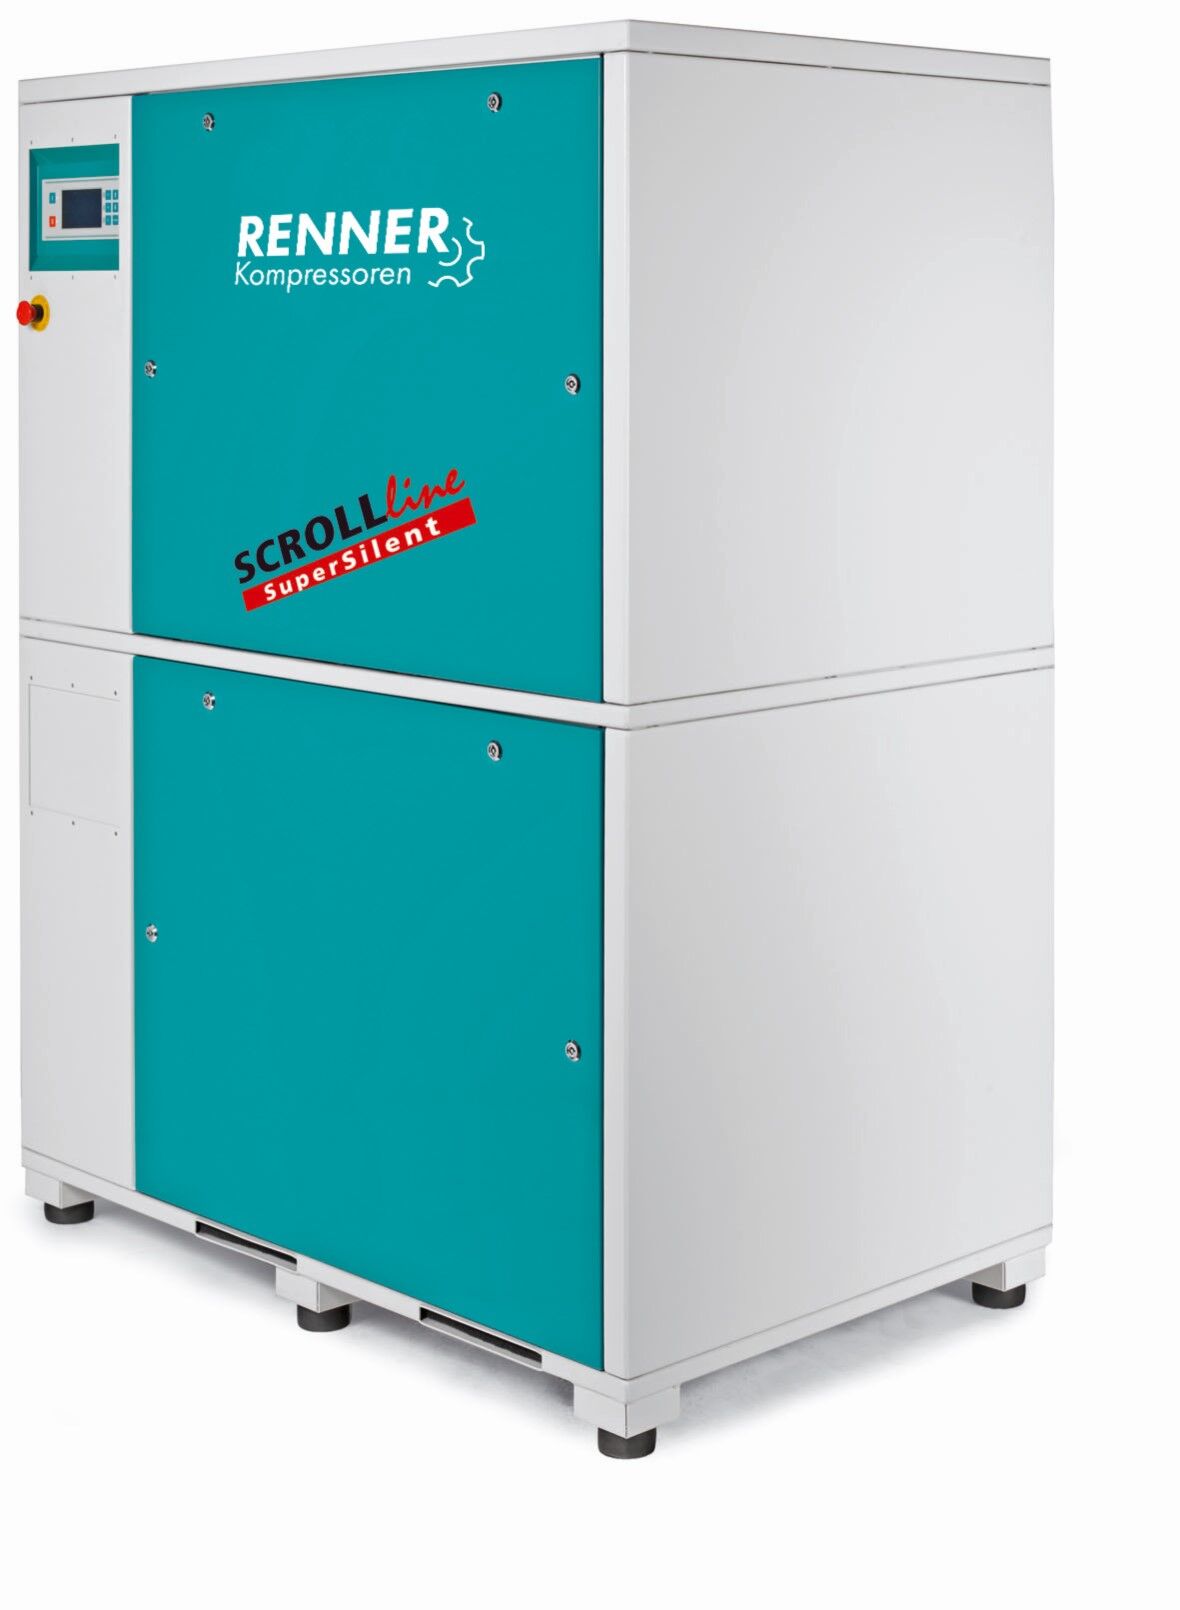 RENNER-Kompressor SLM-S 30,0 als Mehrfachanlage - SuperSilent ölfreier Scrollkompressor